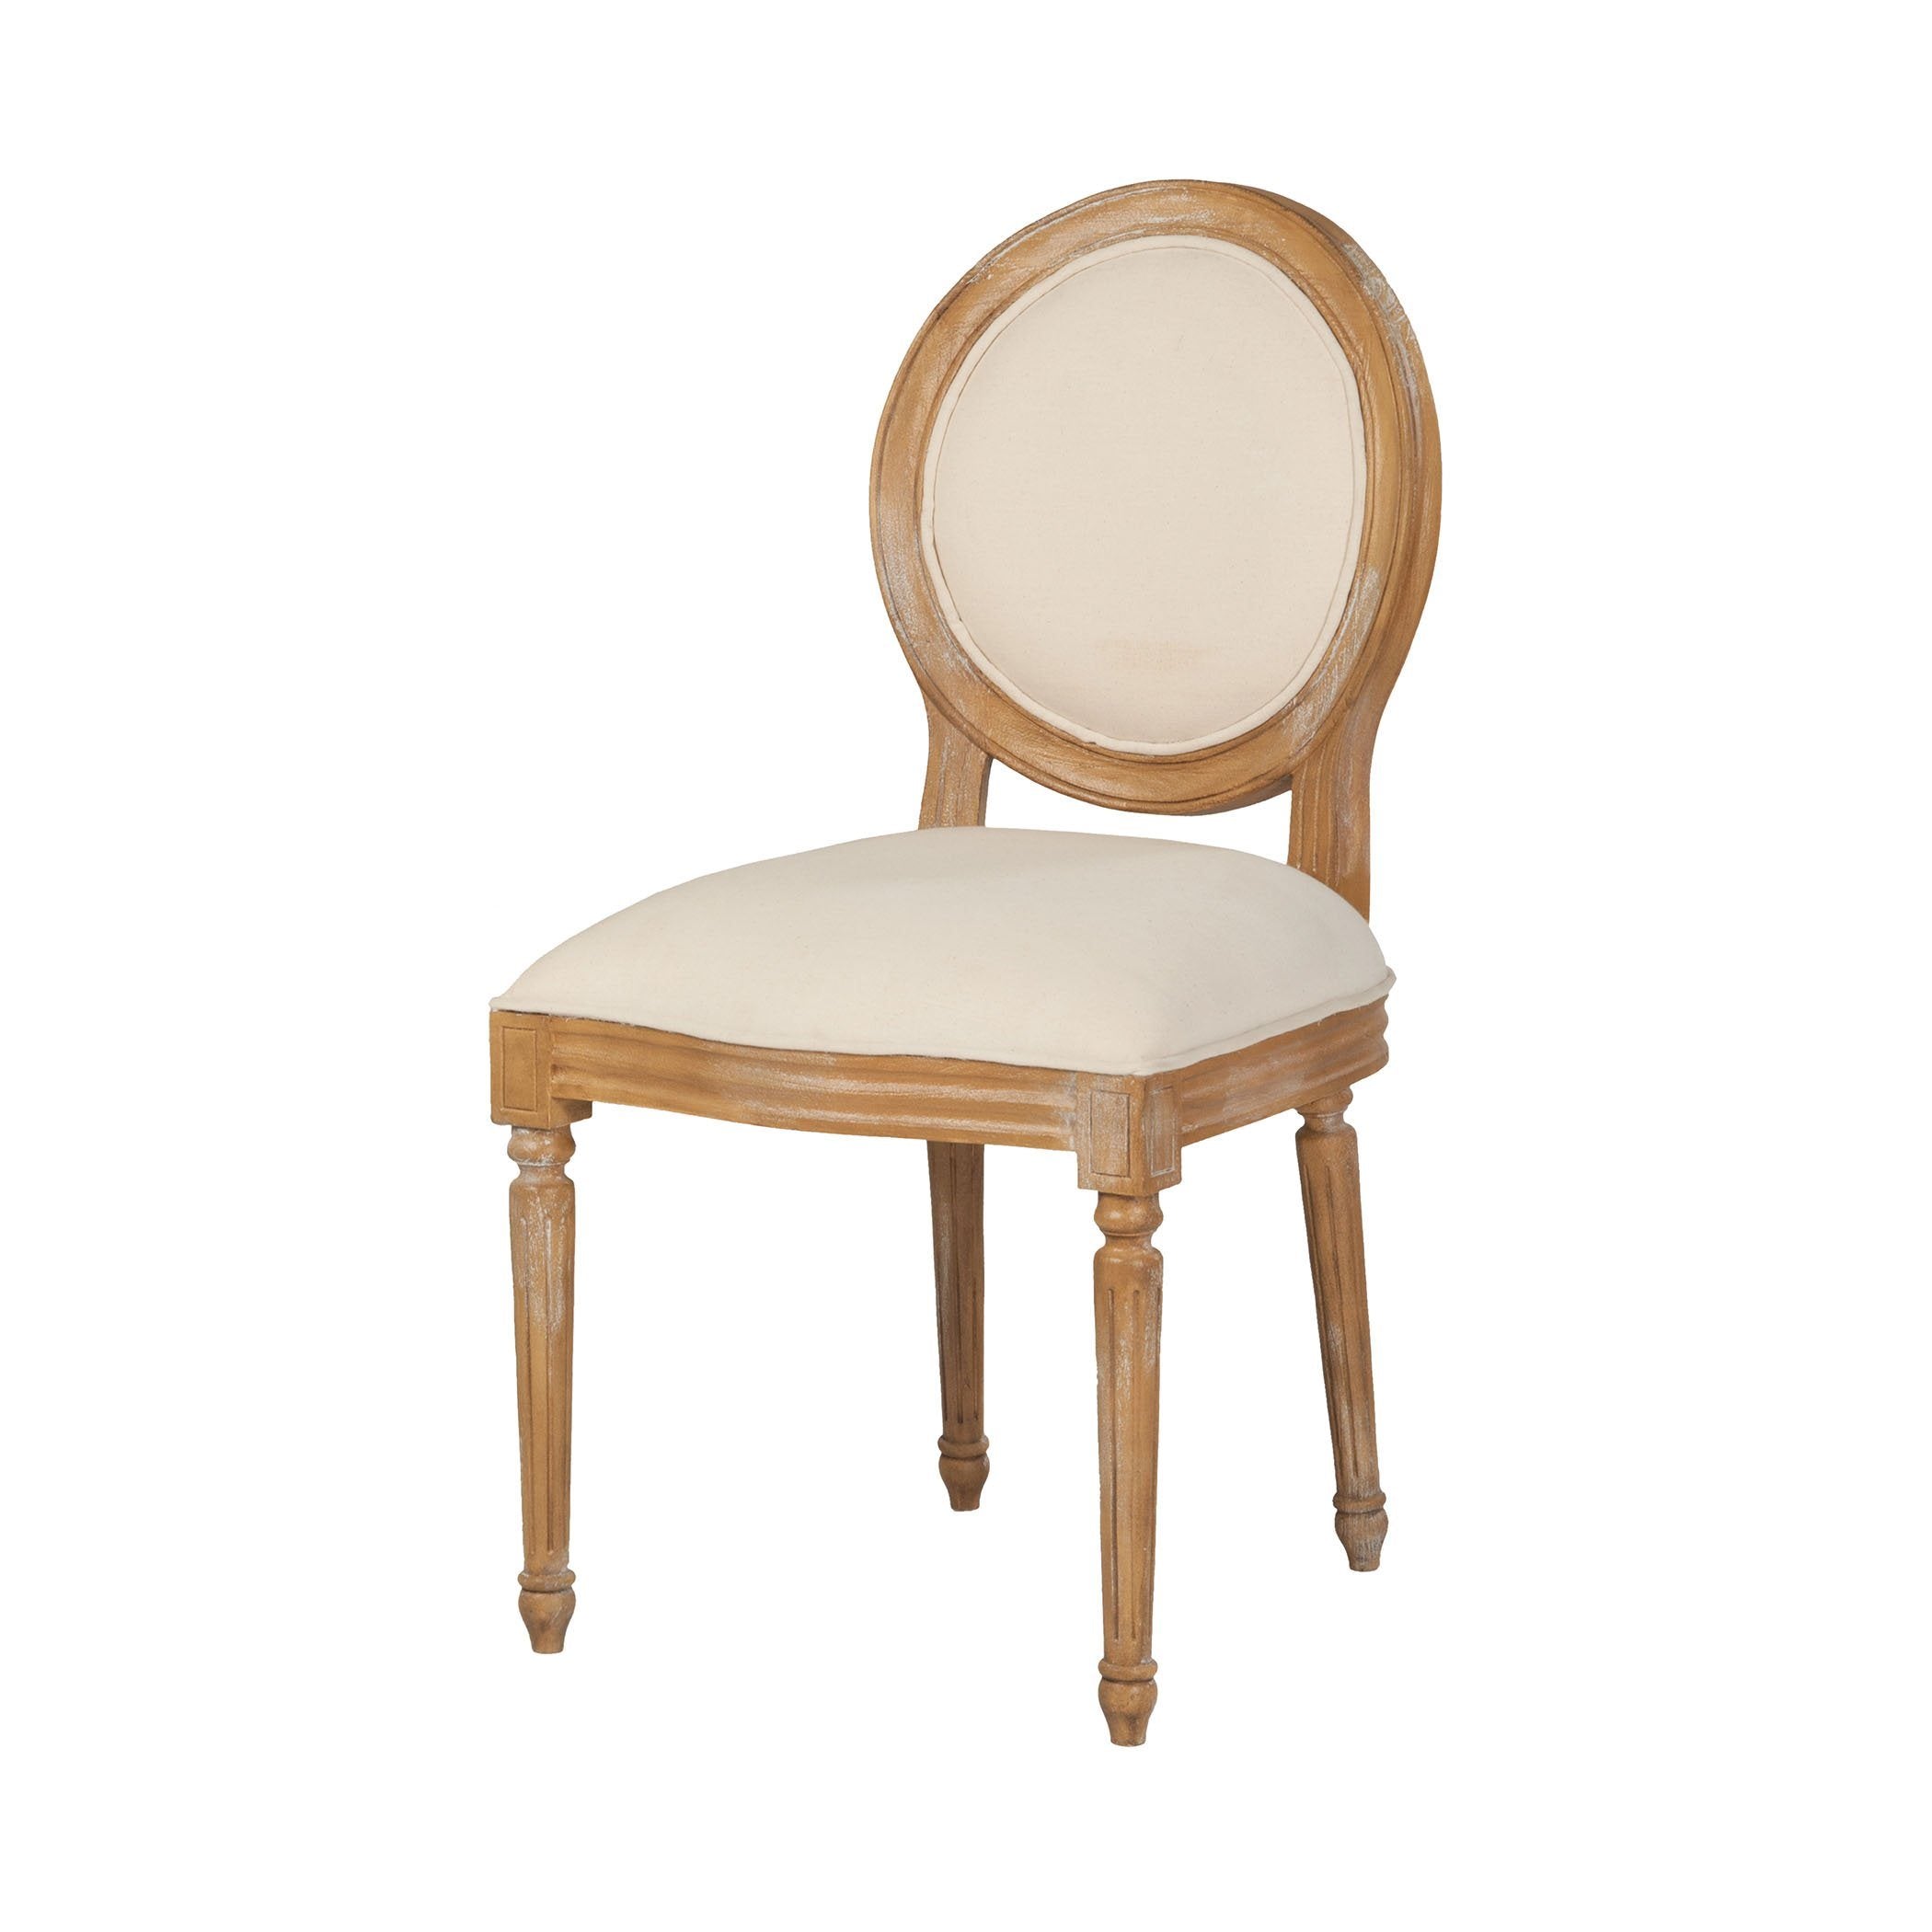 Alcott Artisan Stain Side Chair Furniture GuildMaster 